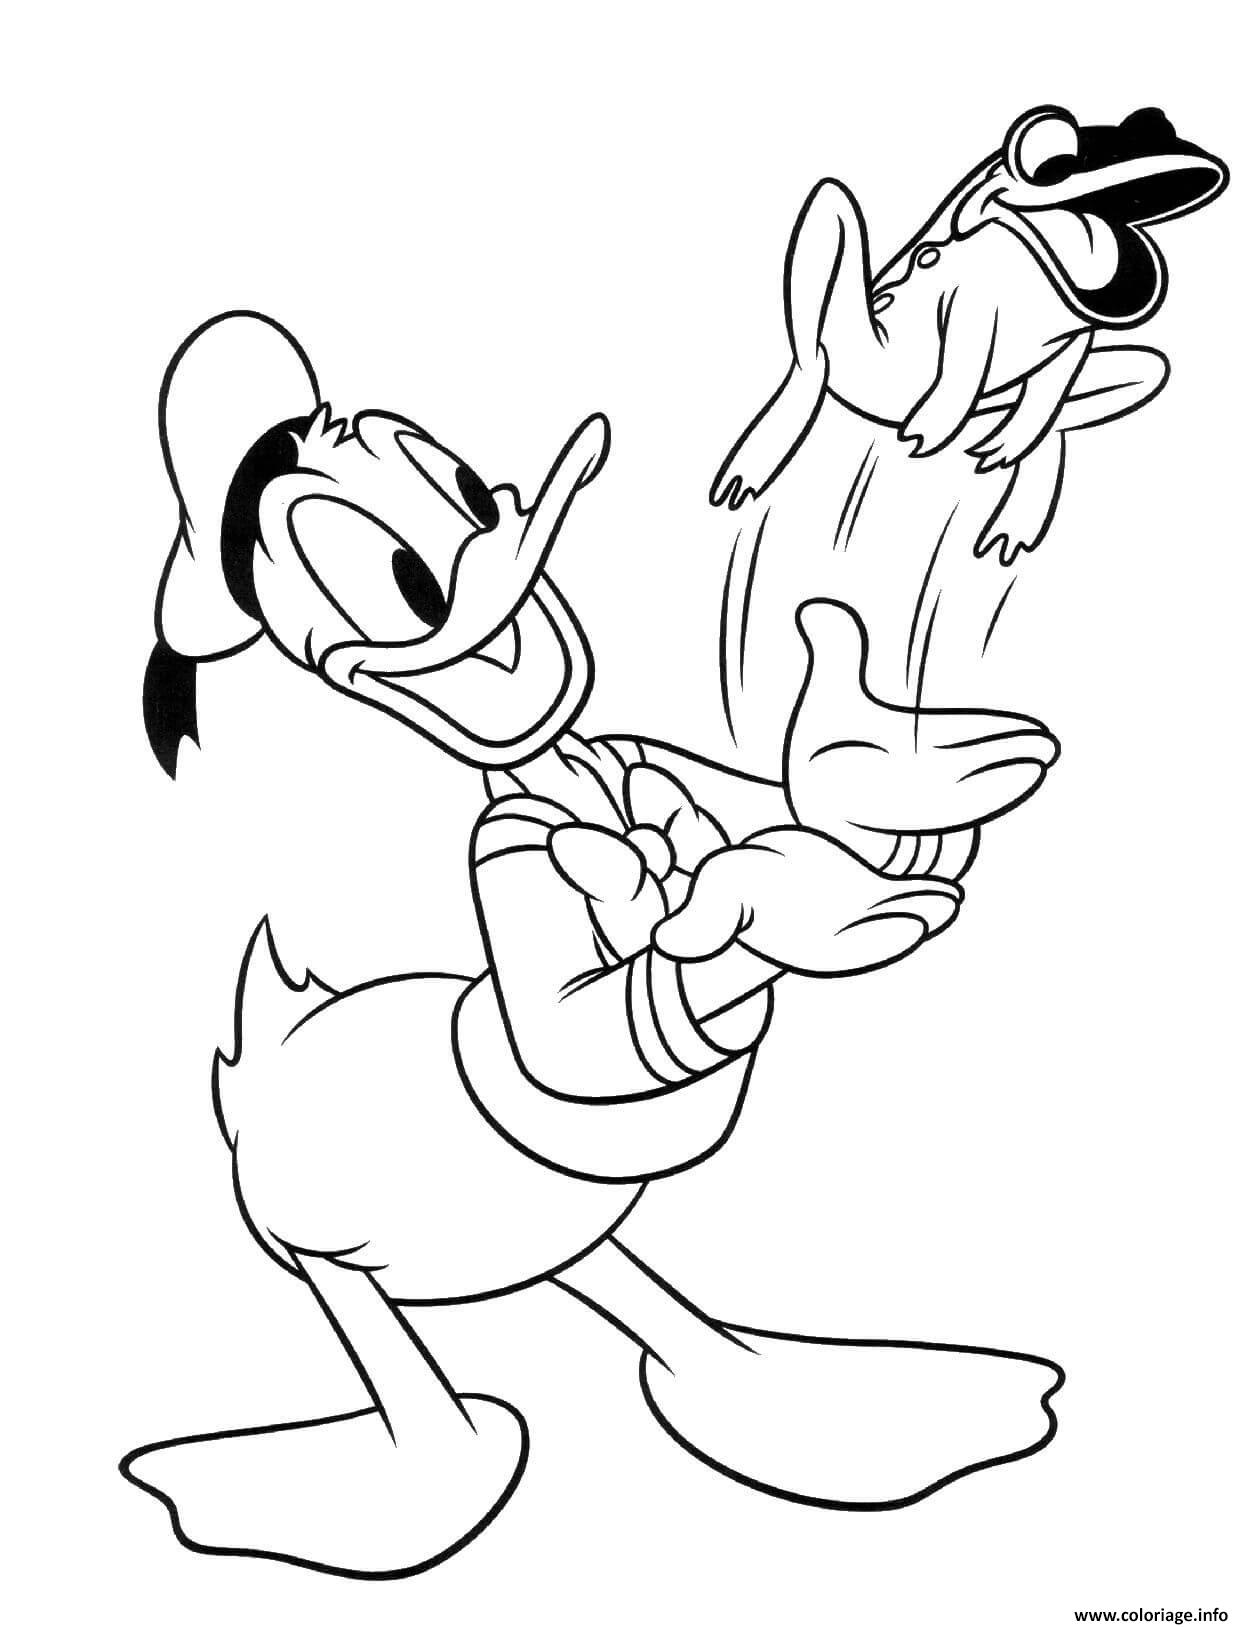 Coloriage Donald Duck Avec Une Grenouille Dessin